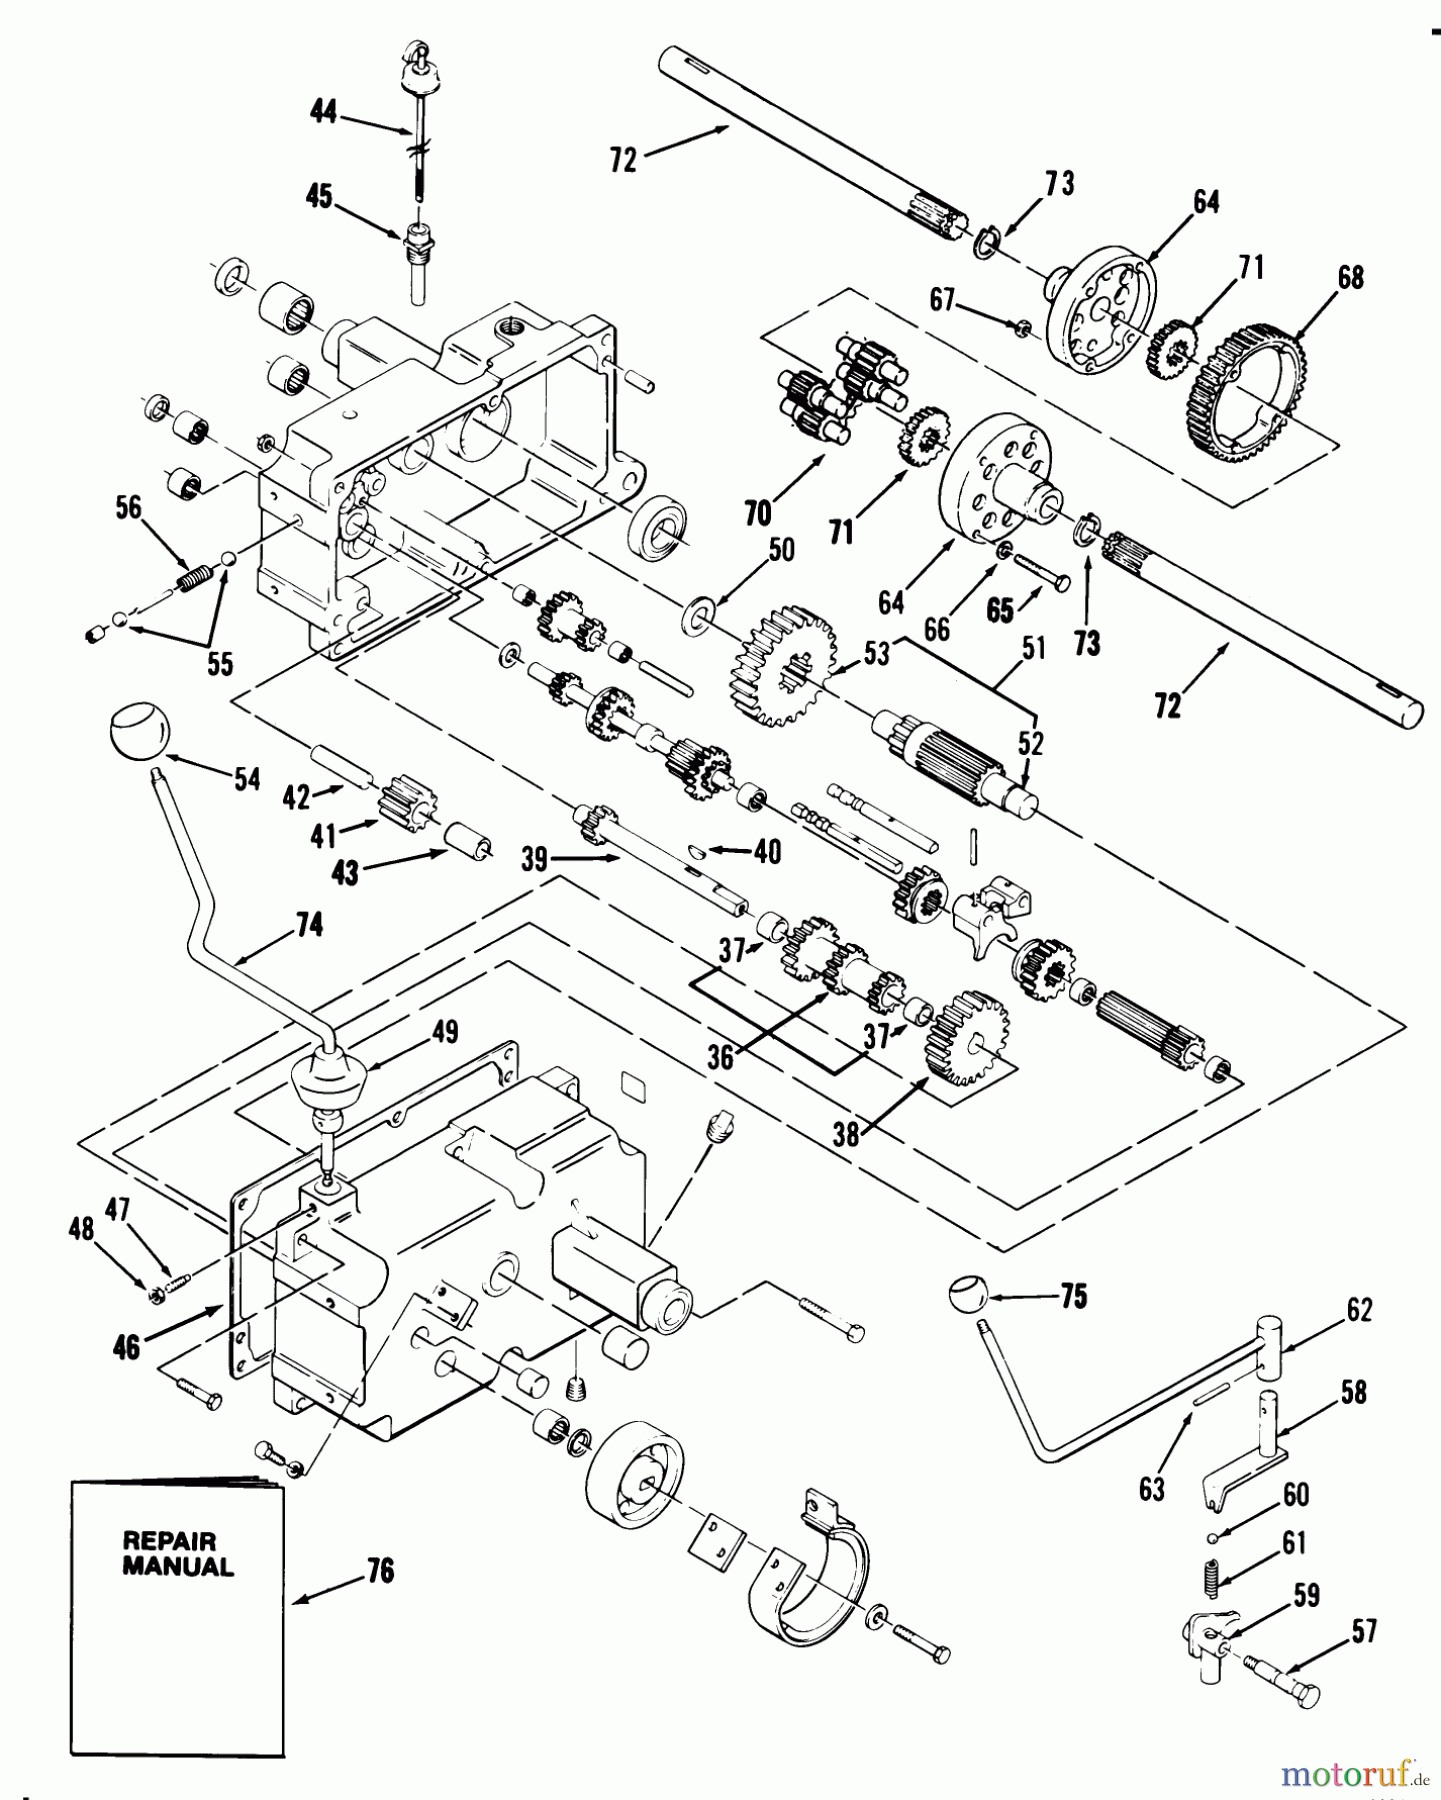  Toro Neu Mowers, Lawn & Garden Tractor Seite 1 31-14K803 (414-8) - Toro 414-8 Garden Tractor, 1988 MECHANICAL TRANSMISSION-8-SPEED #2